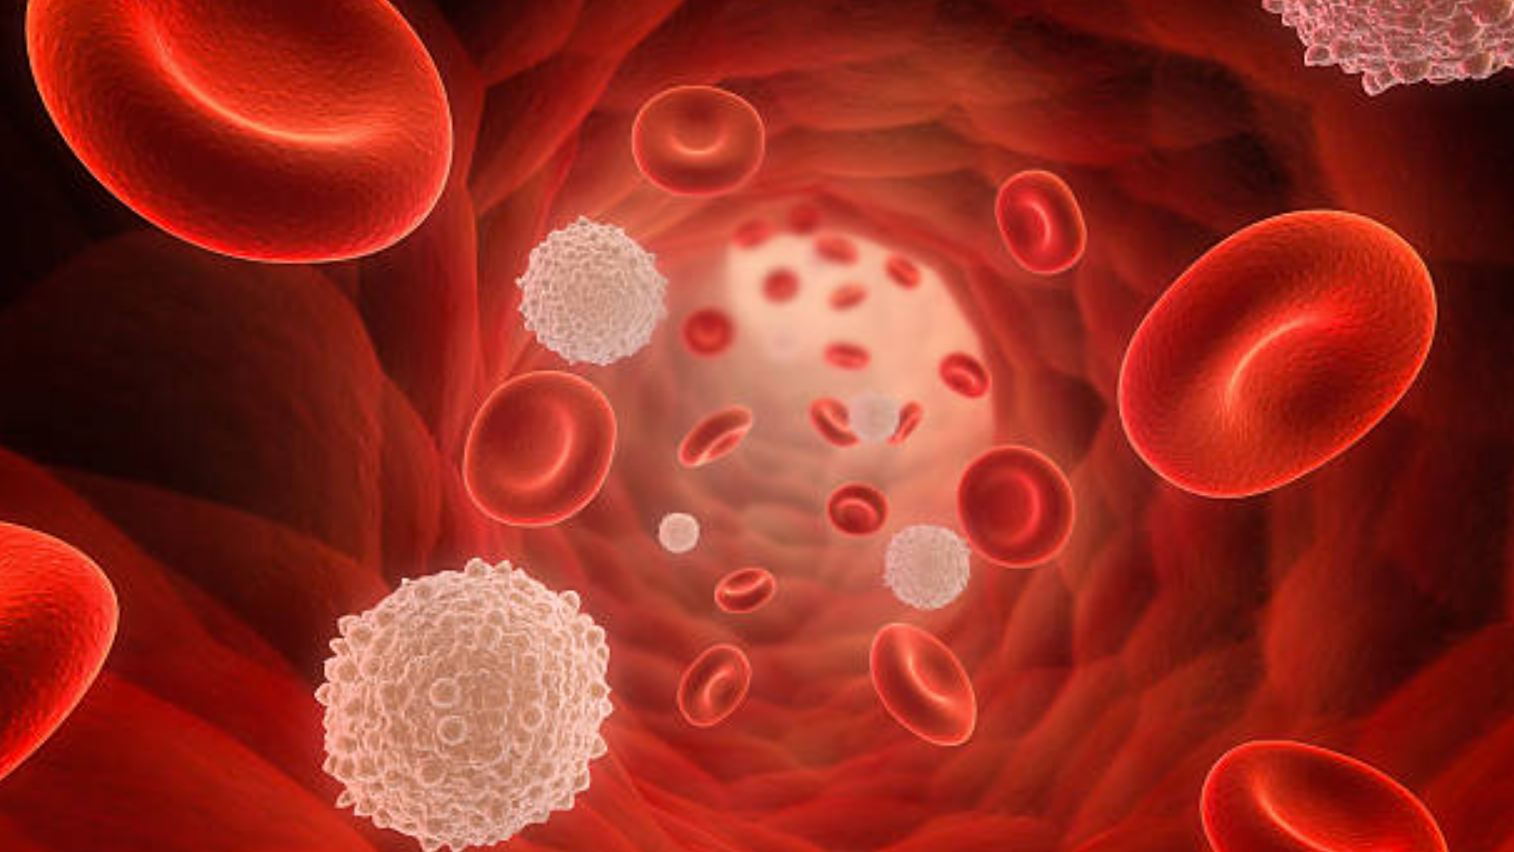 Liệu người mang nhóm máu O có nguy cơ cao về một số bệnh lý nào đặc biệt?
